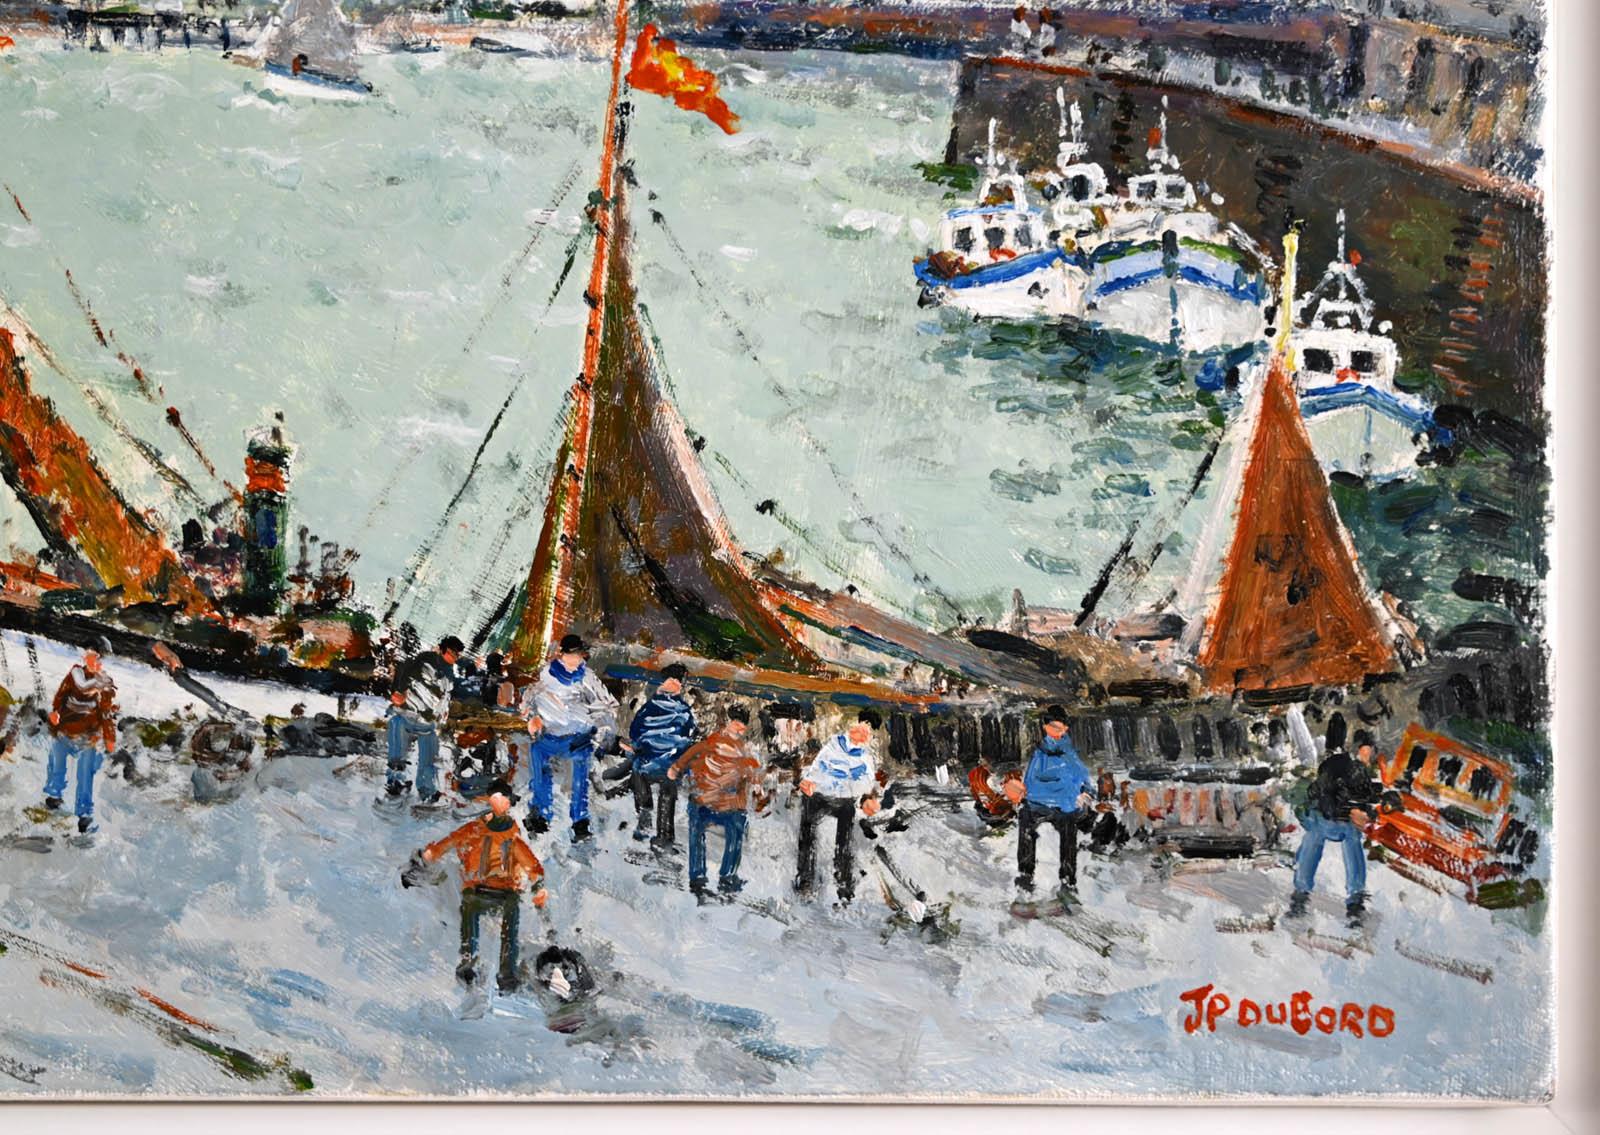 Les vieux Gréements dans le port de Dieppe - Gris Figurative Painting par Jean-Pierre Dubord